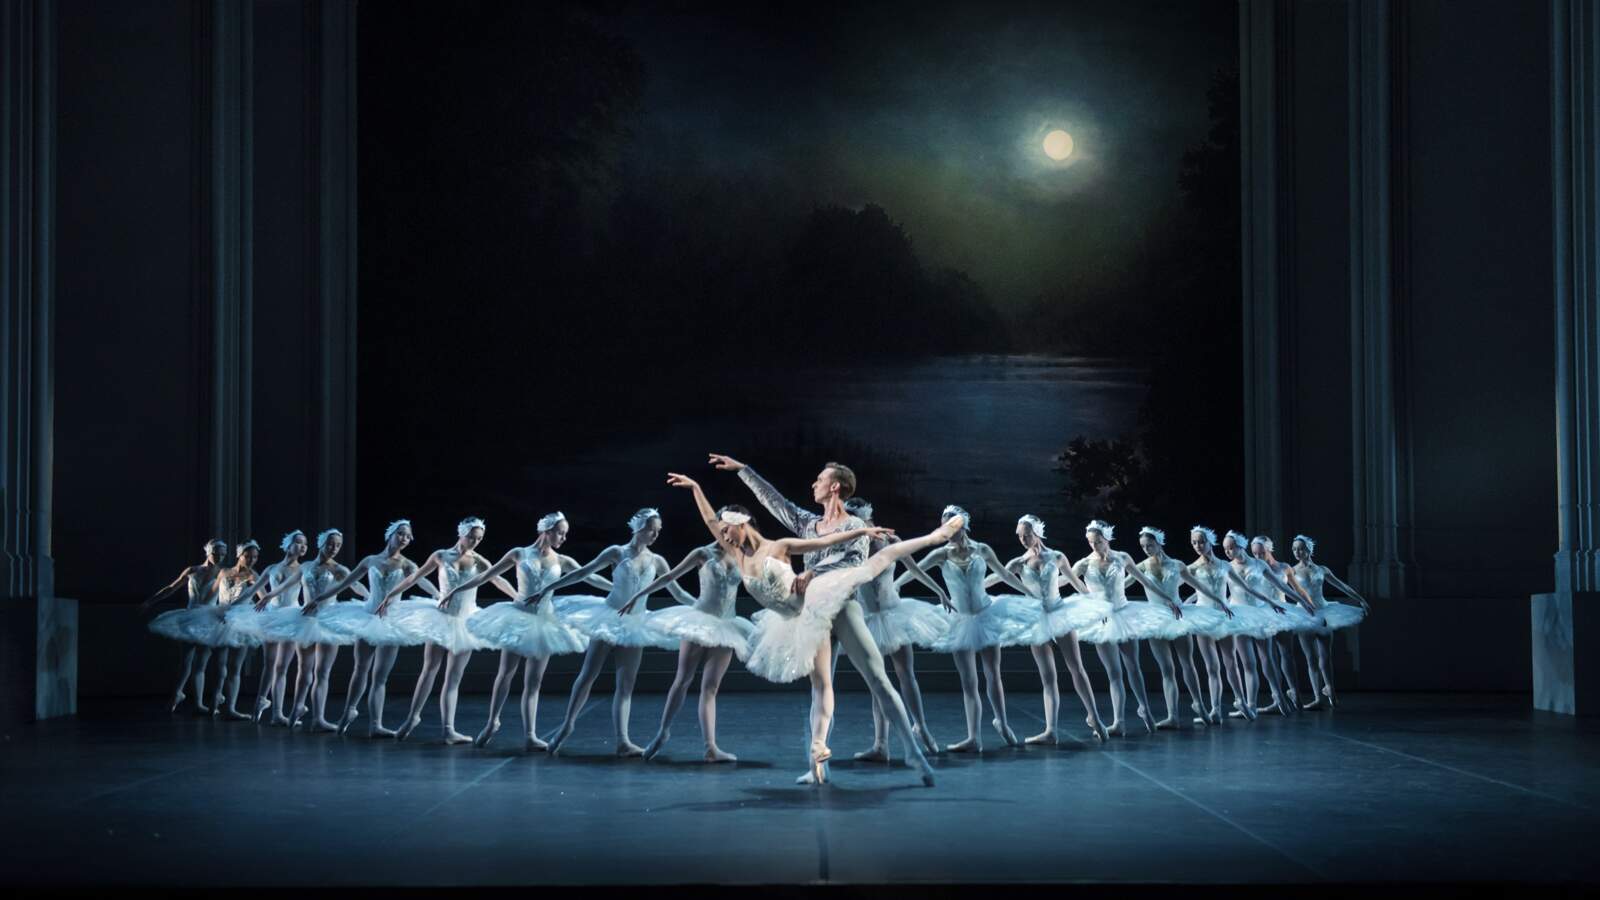 Siegfried och Odette dansar på en mörk scen, framför en rad vitklädda ballerinor. Bakom dem lyser en fullmåne.